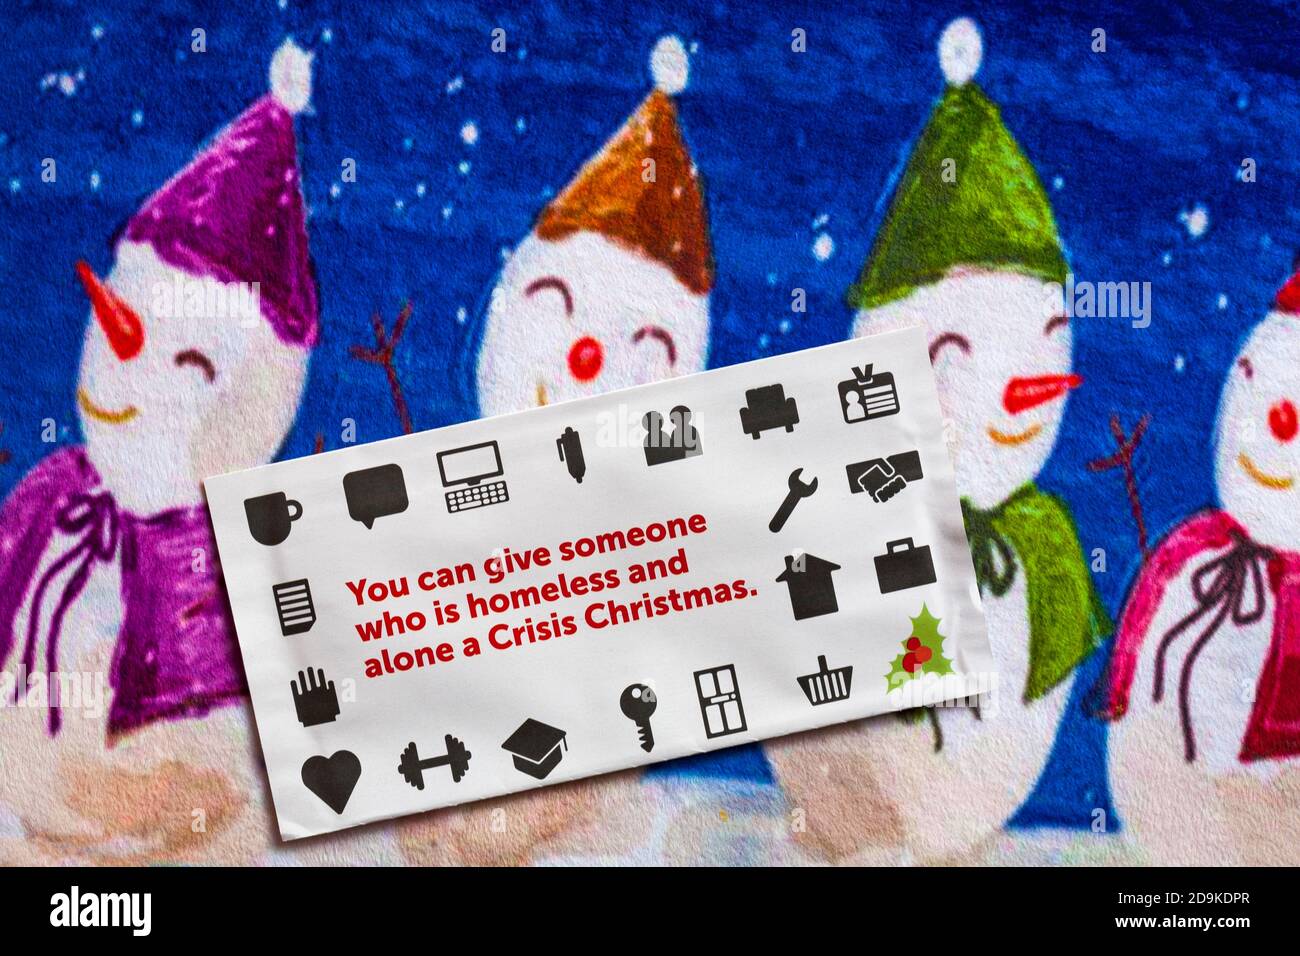 Post on Christmas mat - Charity Appell, Krise Sie können jemandem, der obdachlos ist und allein eine Krise Weihnachten Stockfoto